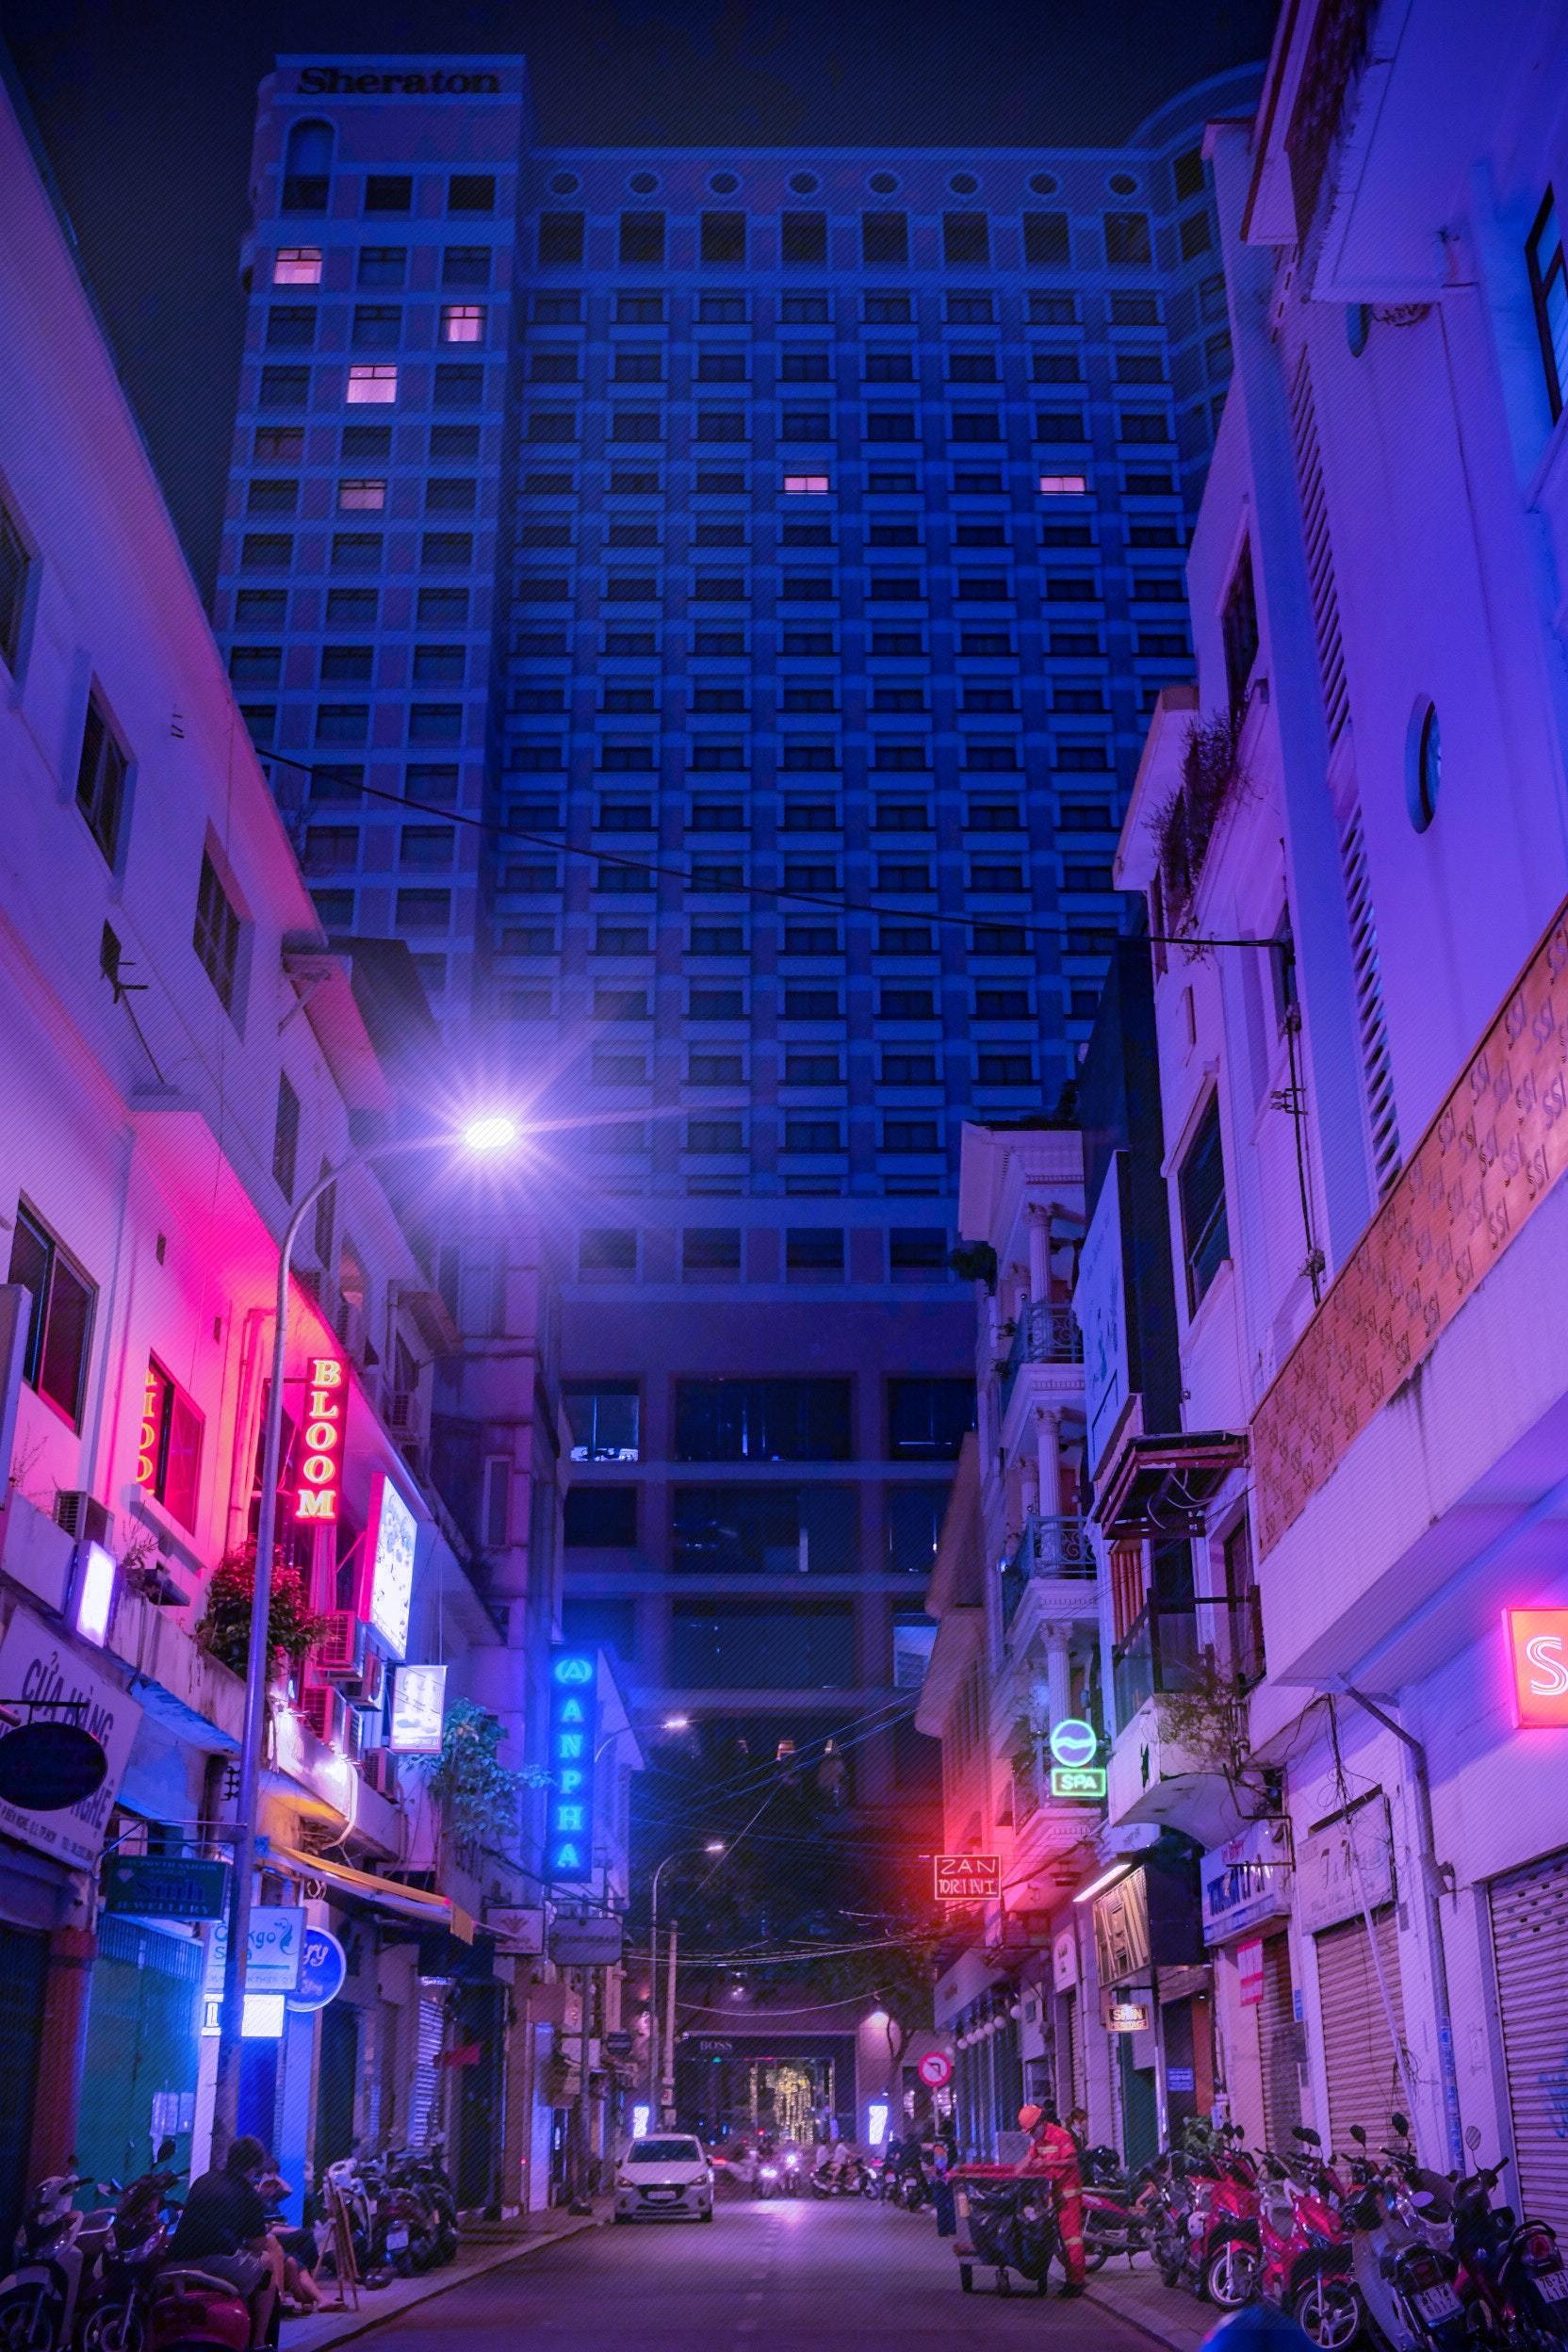 Jalan Kota Sibuk Dalam Foto Cahaya Biru Dan Merah Muda 